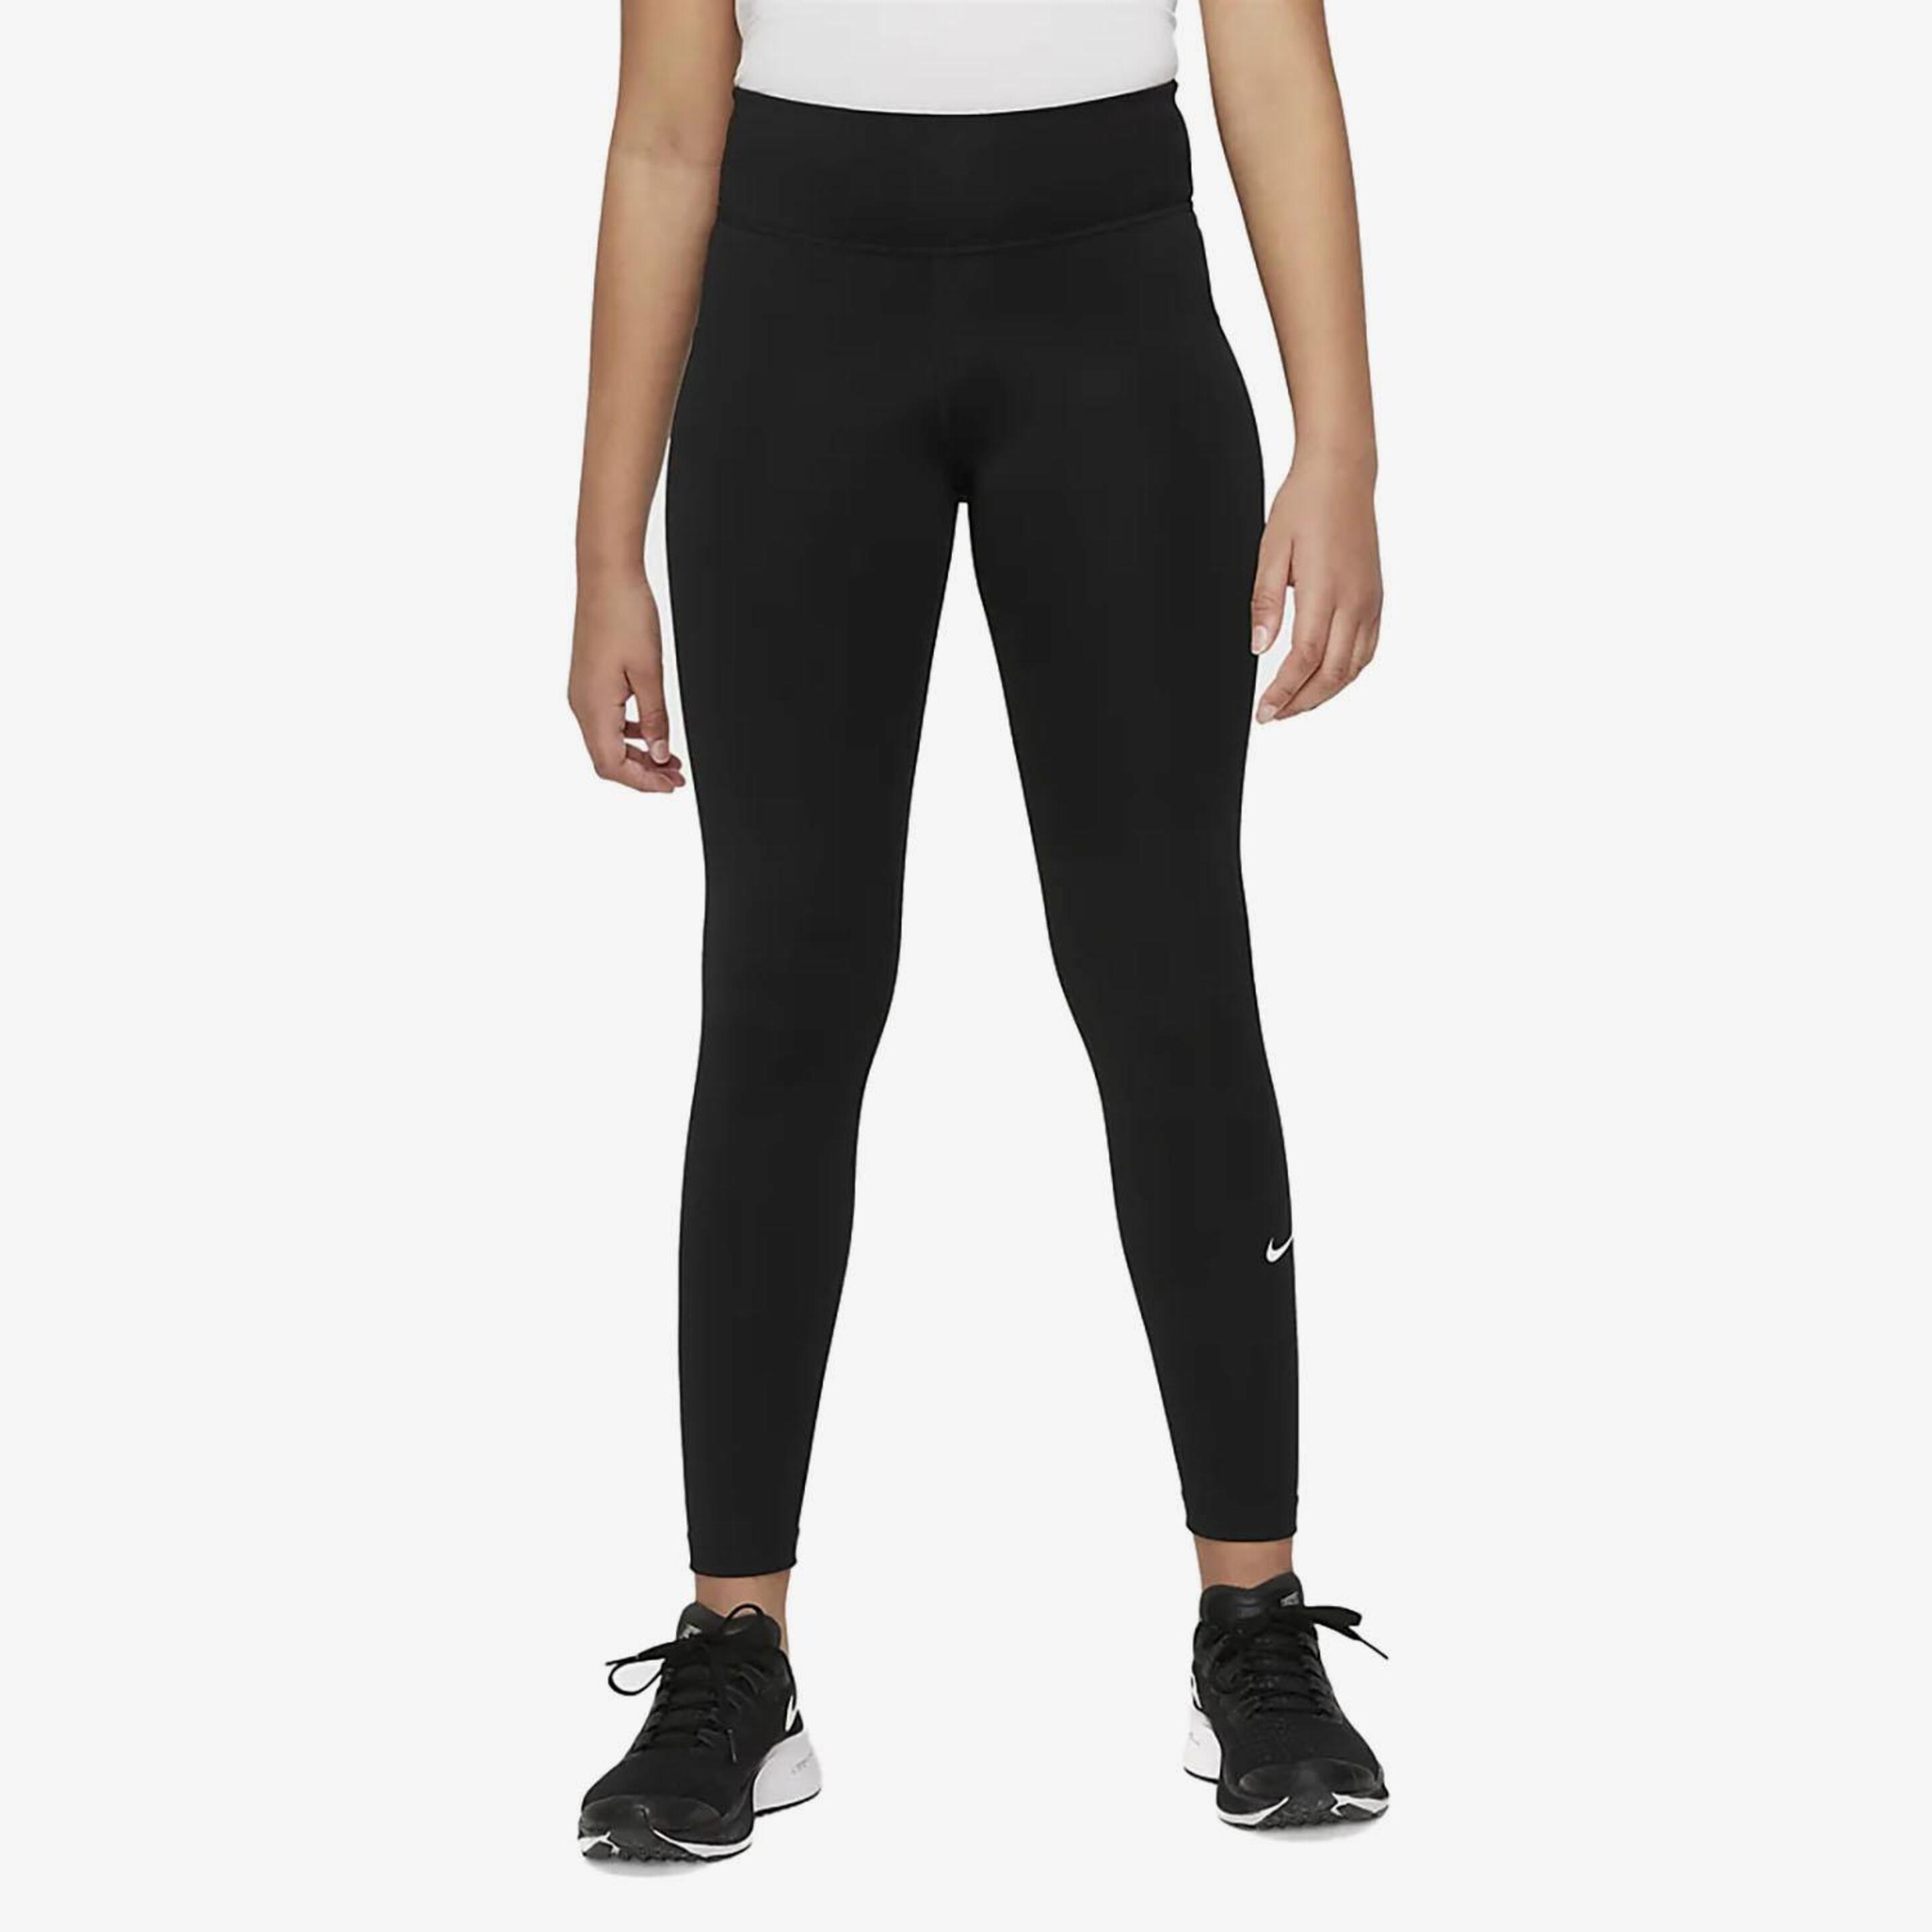 Nike Dri-fit One - negro - Mallas Fitness Chica